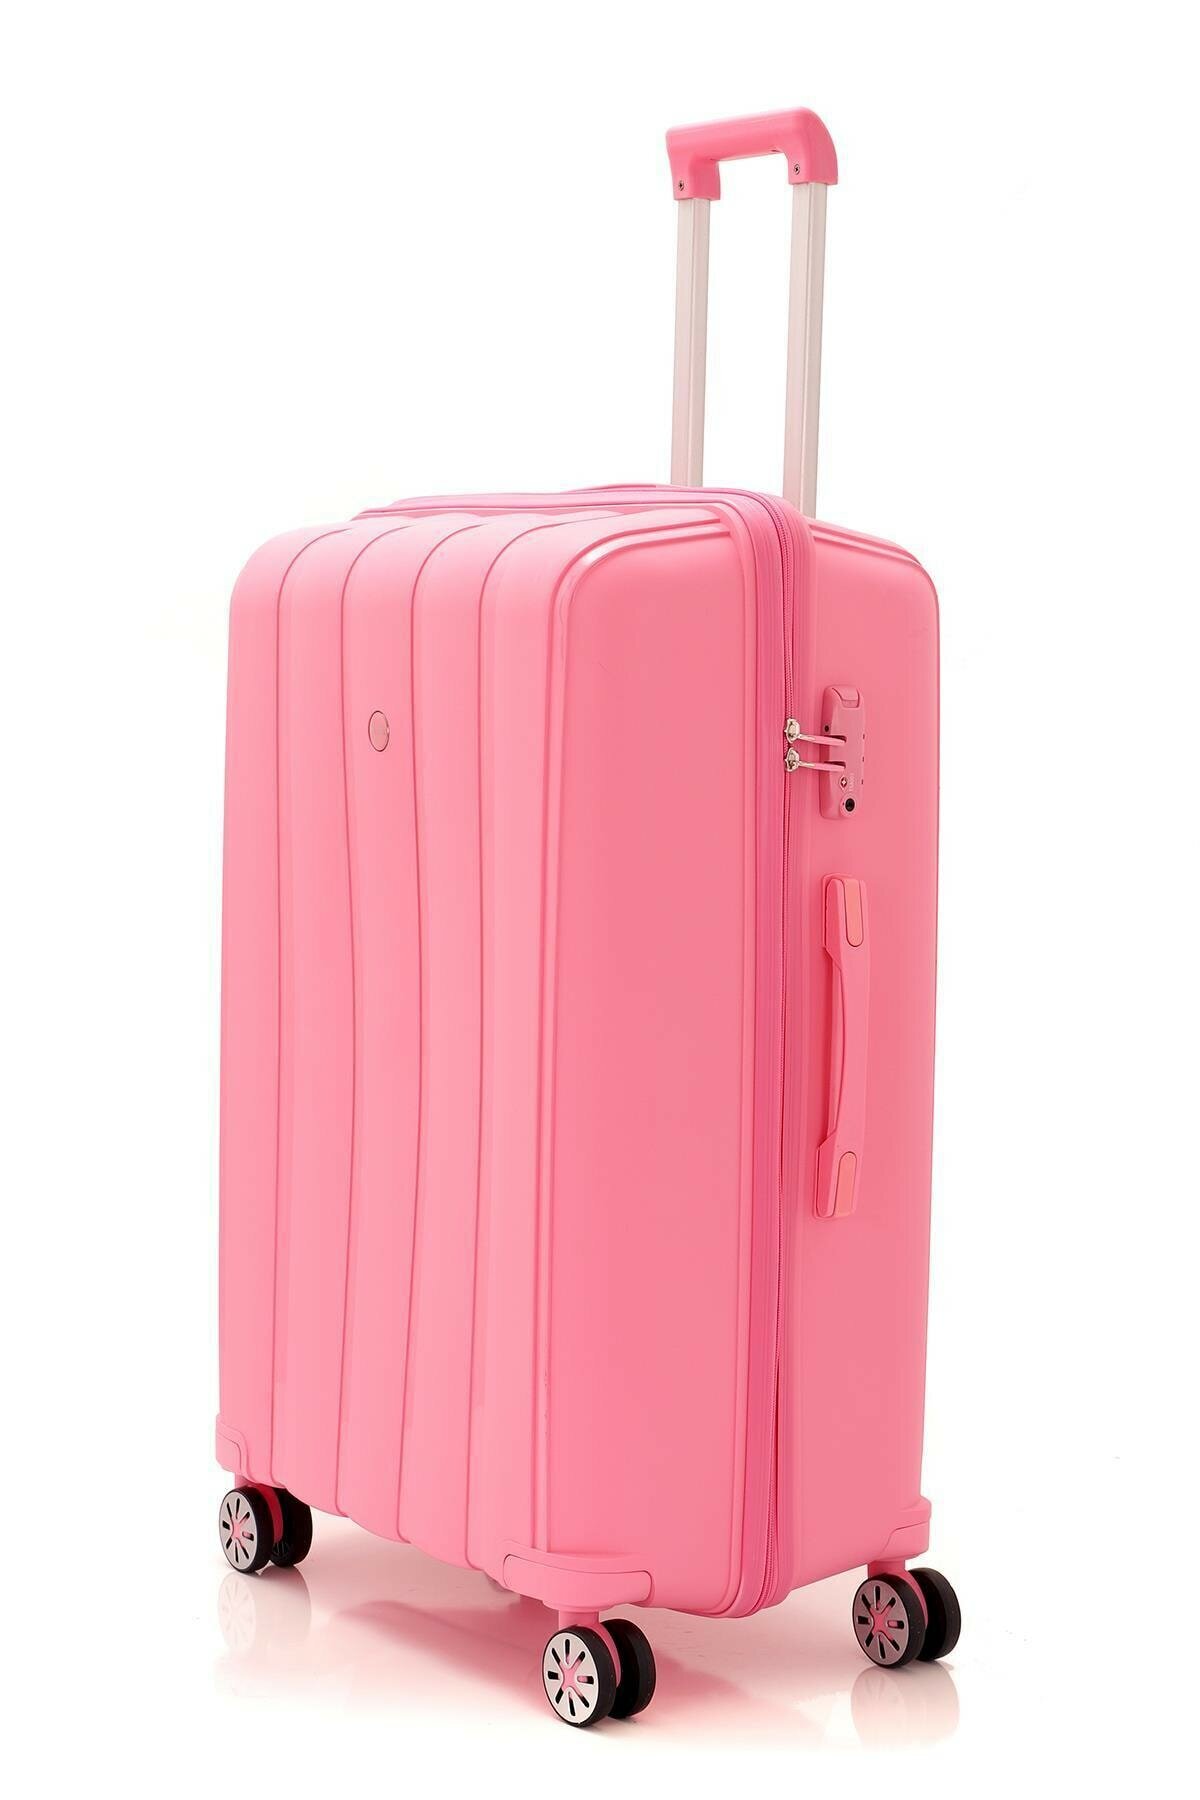 Средний чемодан из полипропилена MCS V305 M PINK! Для 18 кг! - 6